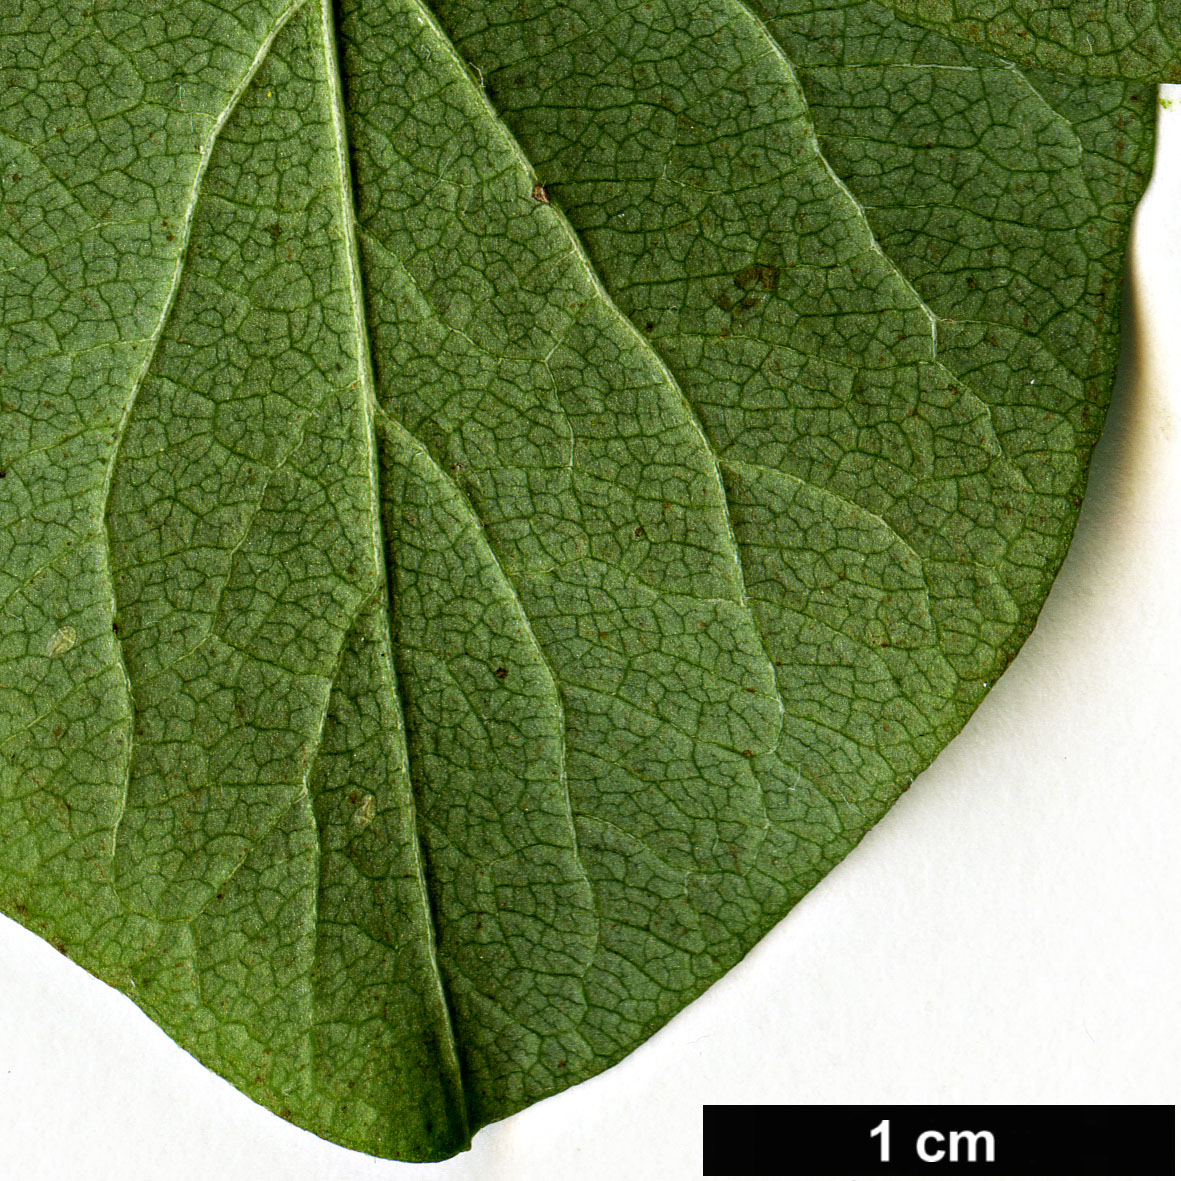 High resolution image: Family: Caprifoliaceae - Genus: Symphoricarpos - Taxon: albus - SpeciesSub: var. laevigatus